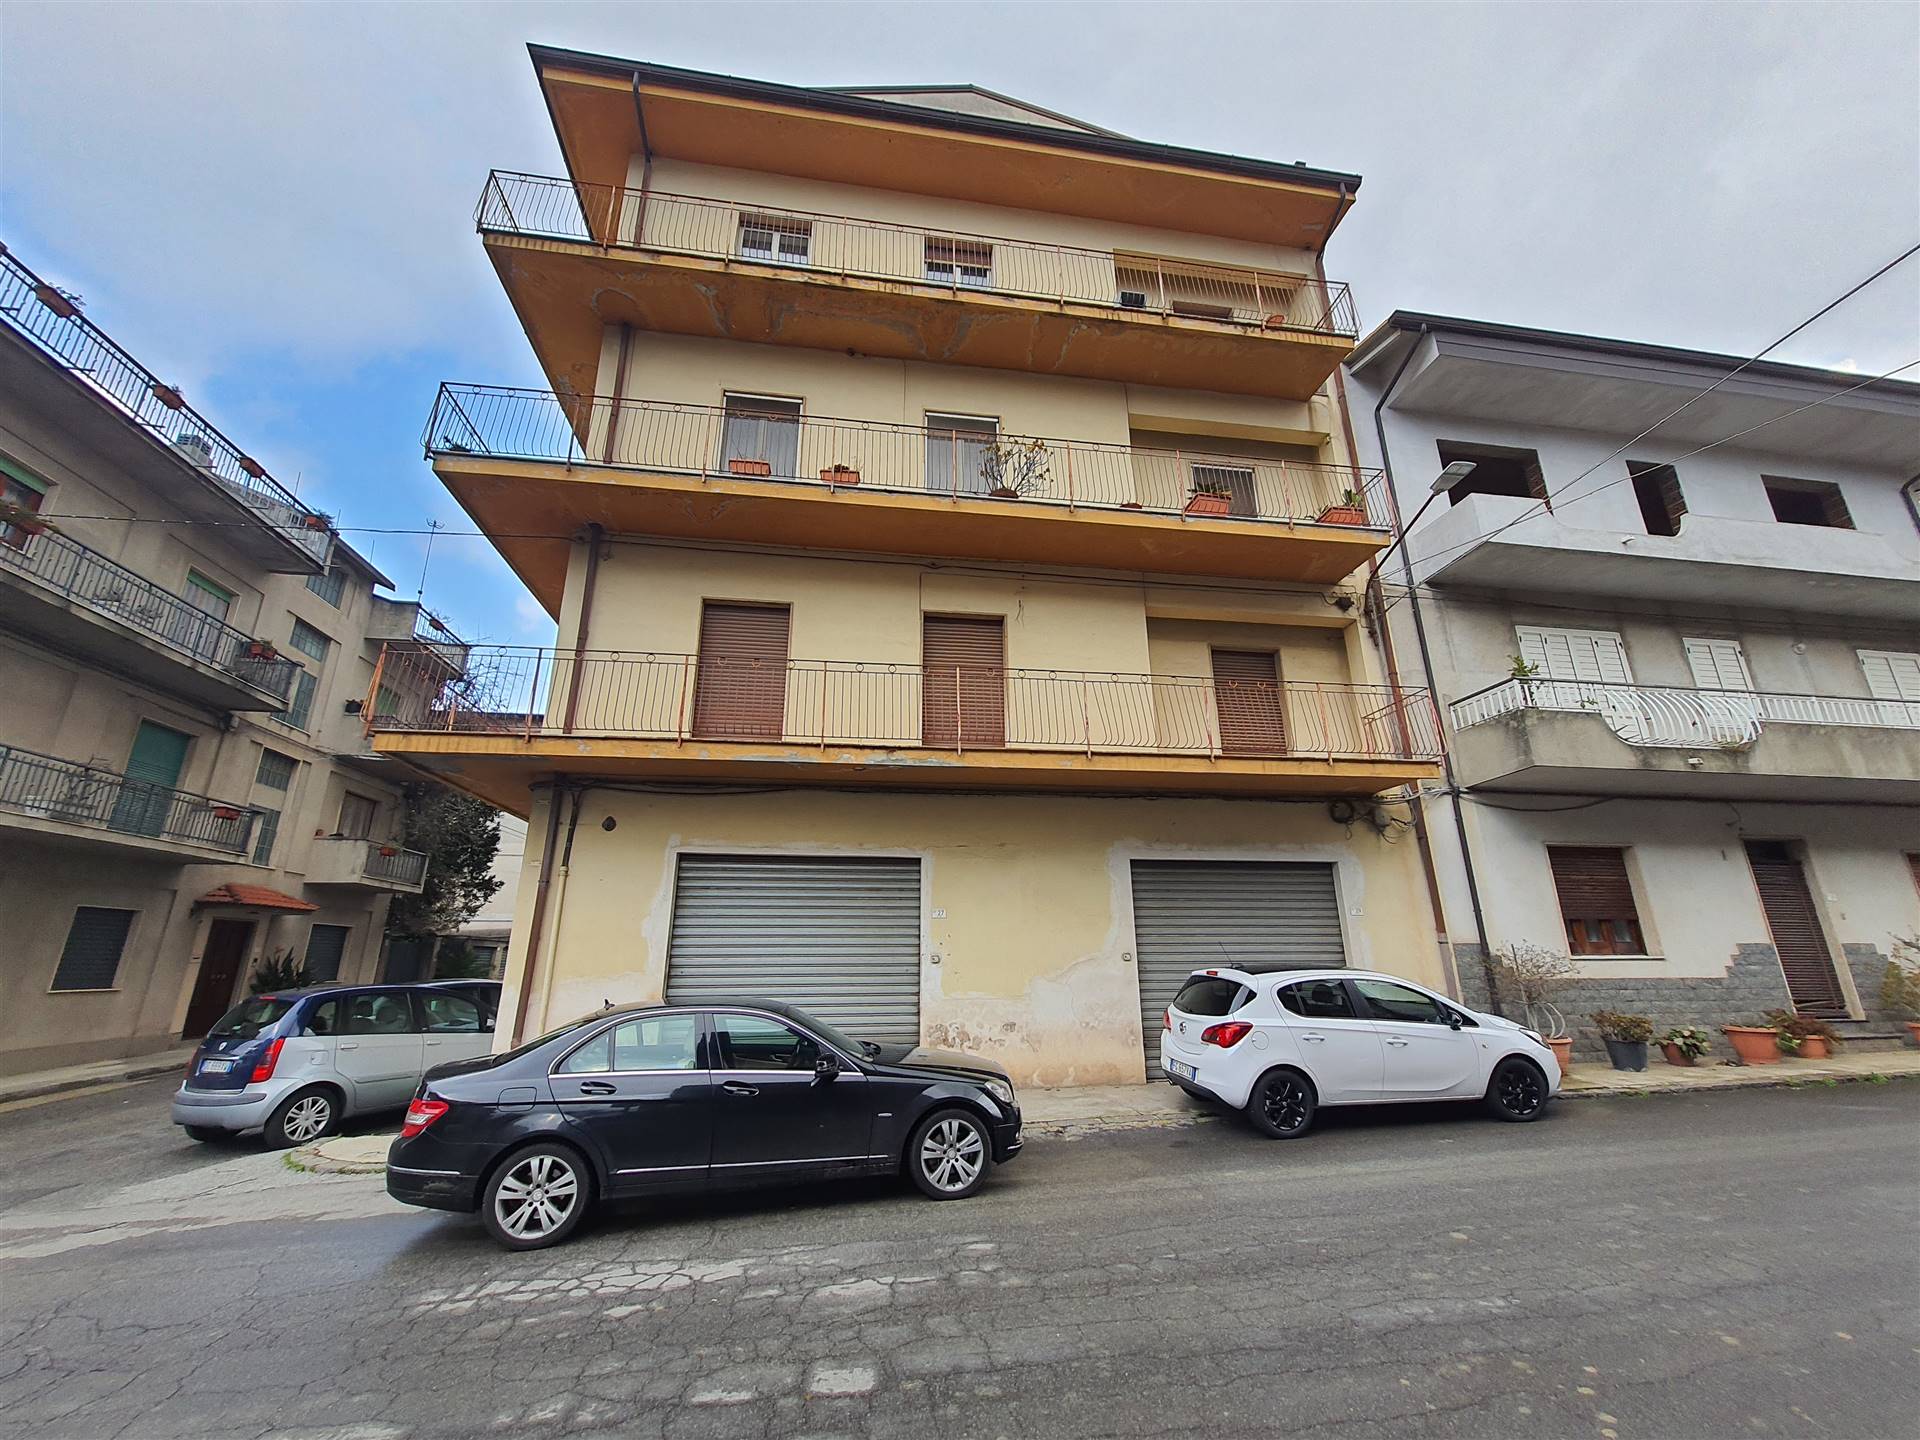 Appartamento in vendita a Taurianova, 6 locali, prezzo € 130.000 | PortaleAgenzieImmobiliari.it